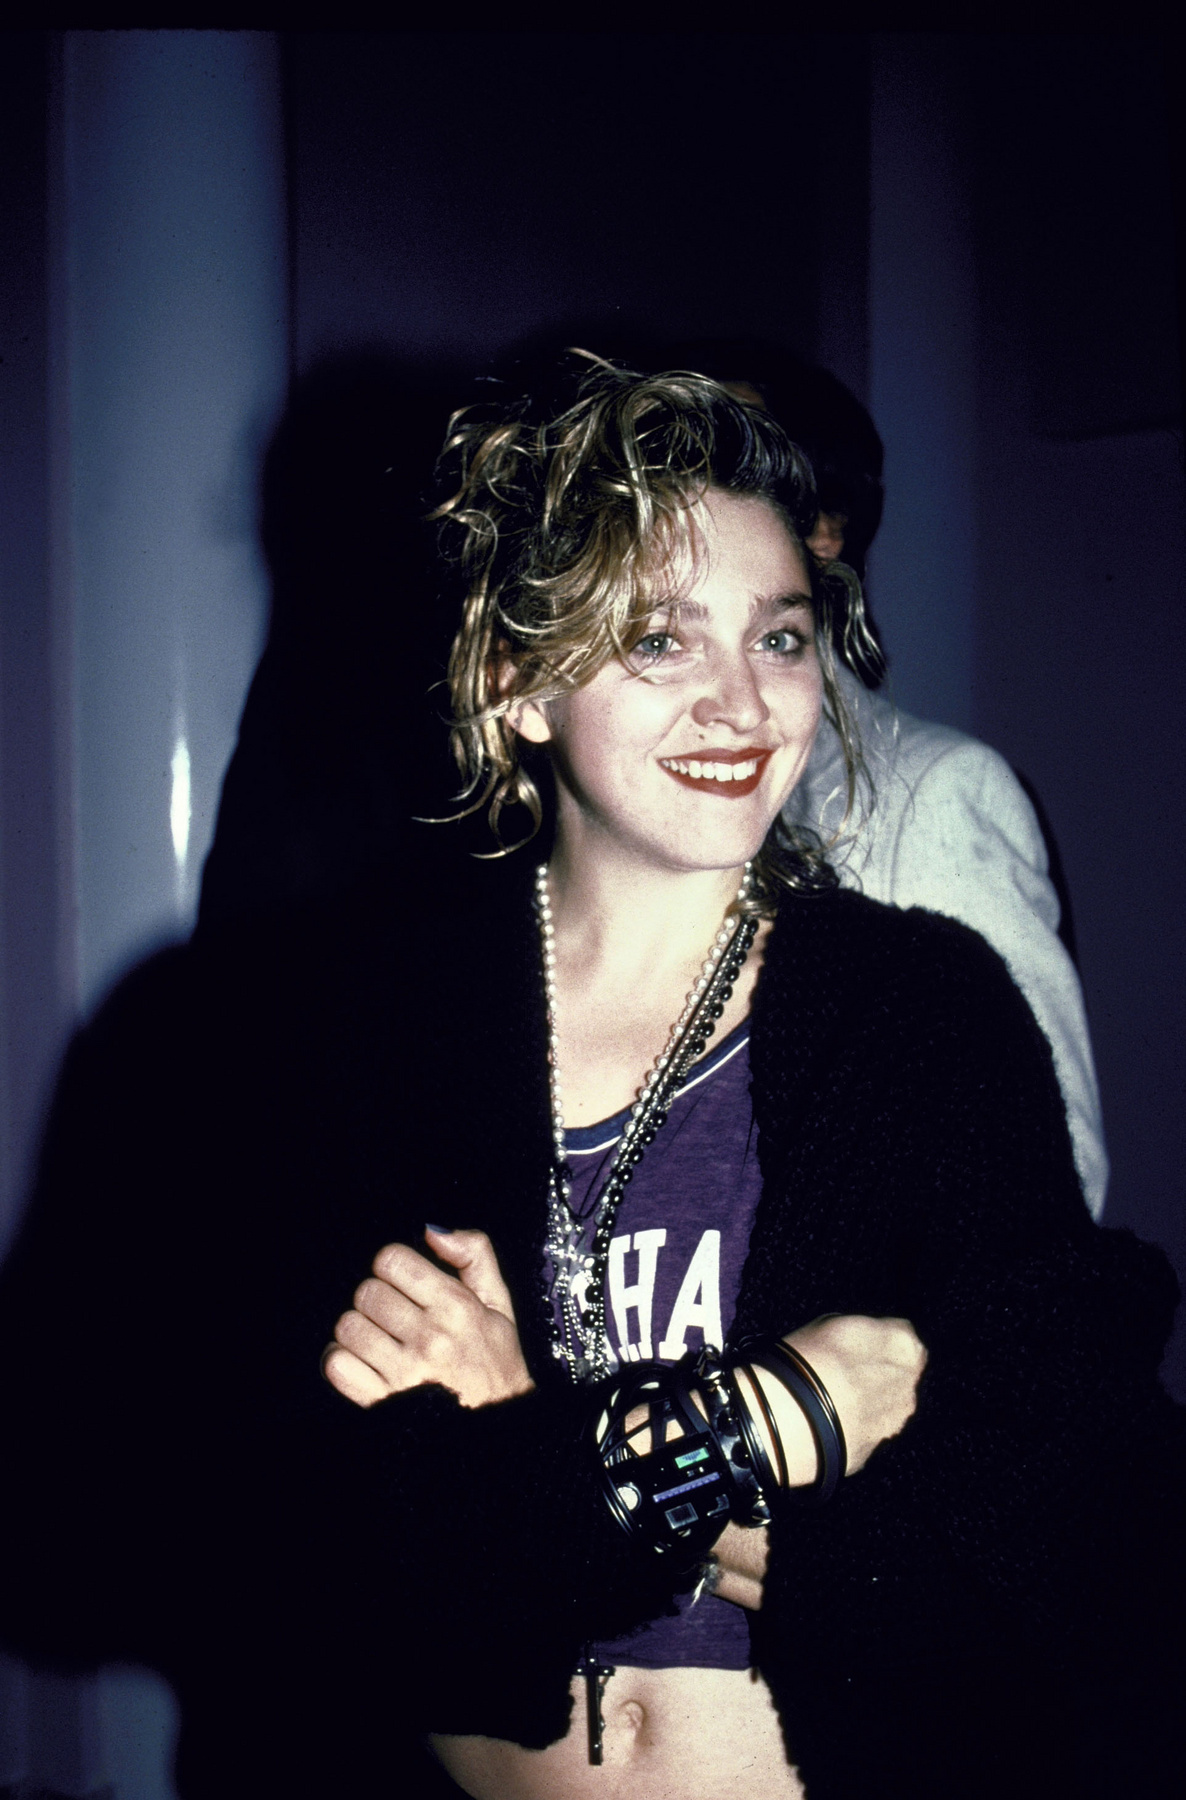 A hajban a masni, a napszemüveg, sőt, még egy kiegészítő: kesztyű! Madonna a Kétségbeesve keresem Susant címszerepében, mellette partnere, Rosanna Arquette.